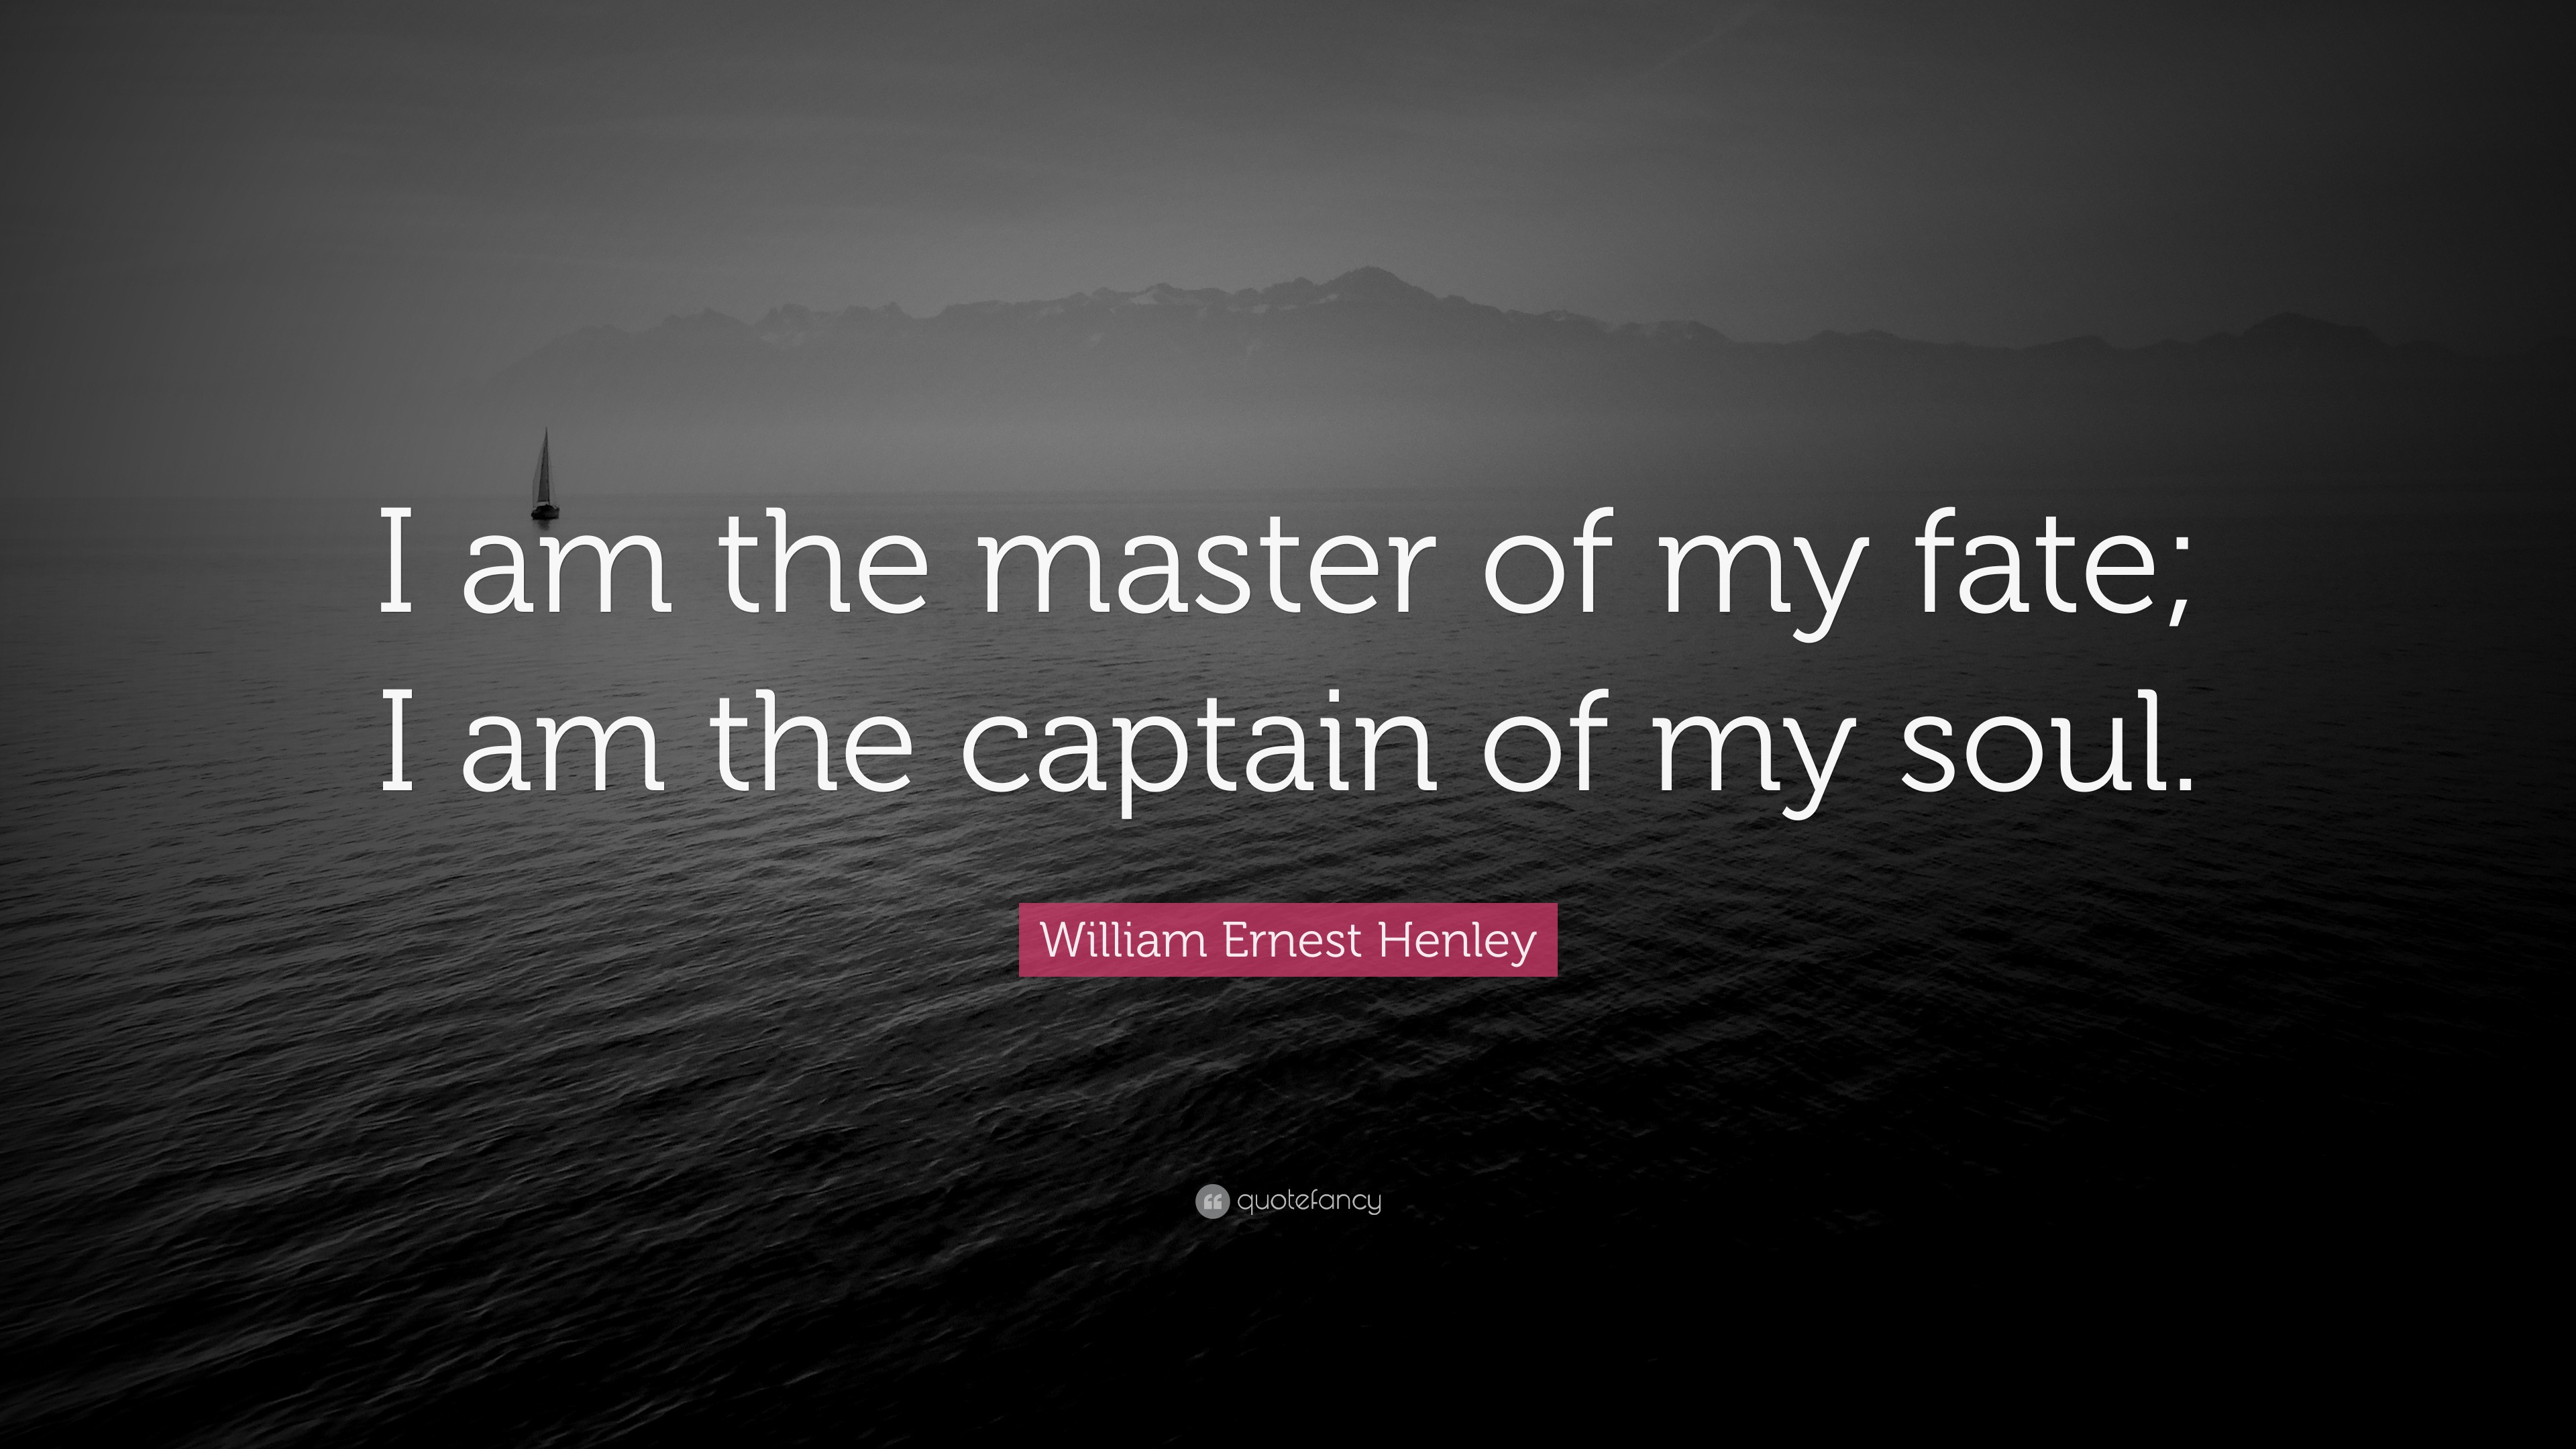 Top 25 William Ernest Henley Quotes 2021 Update Quotefancy